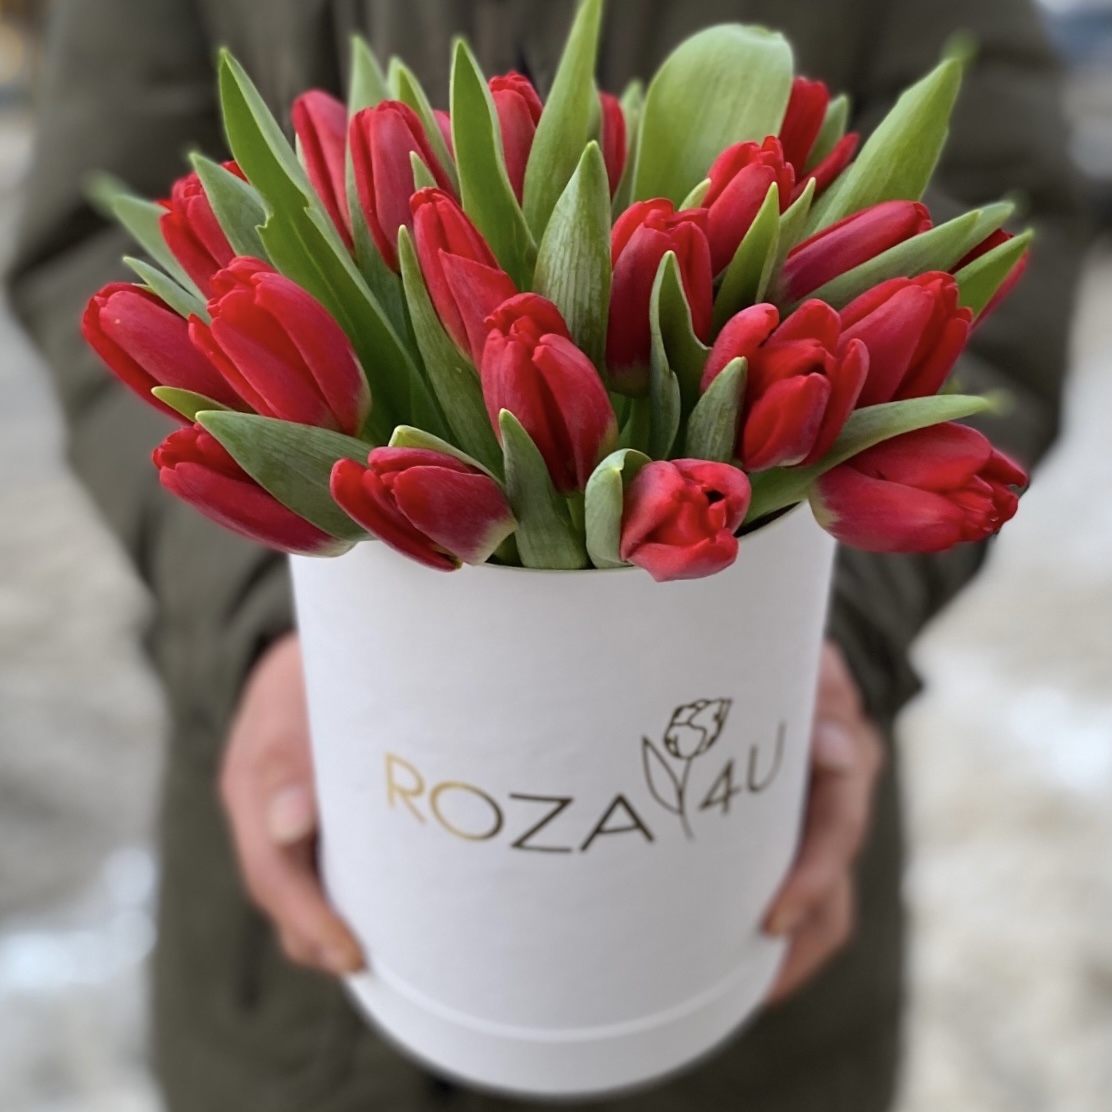 25 красных тюльпанов в коробке